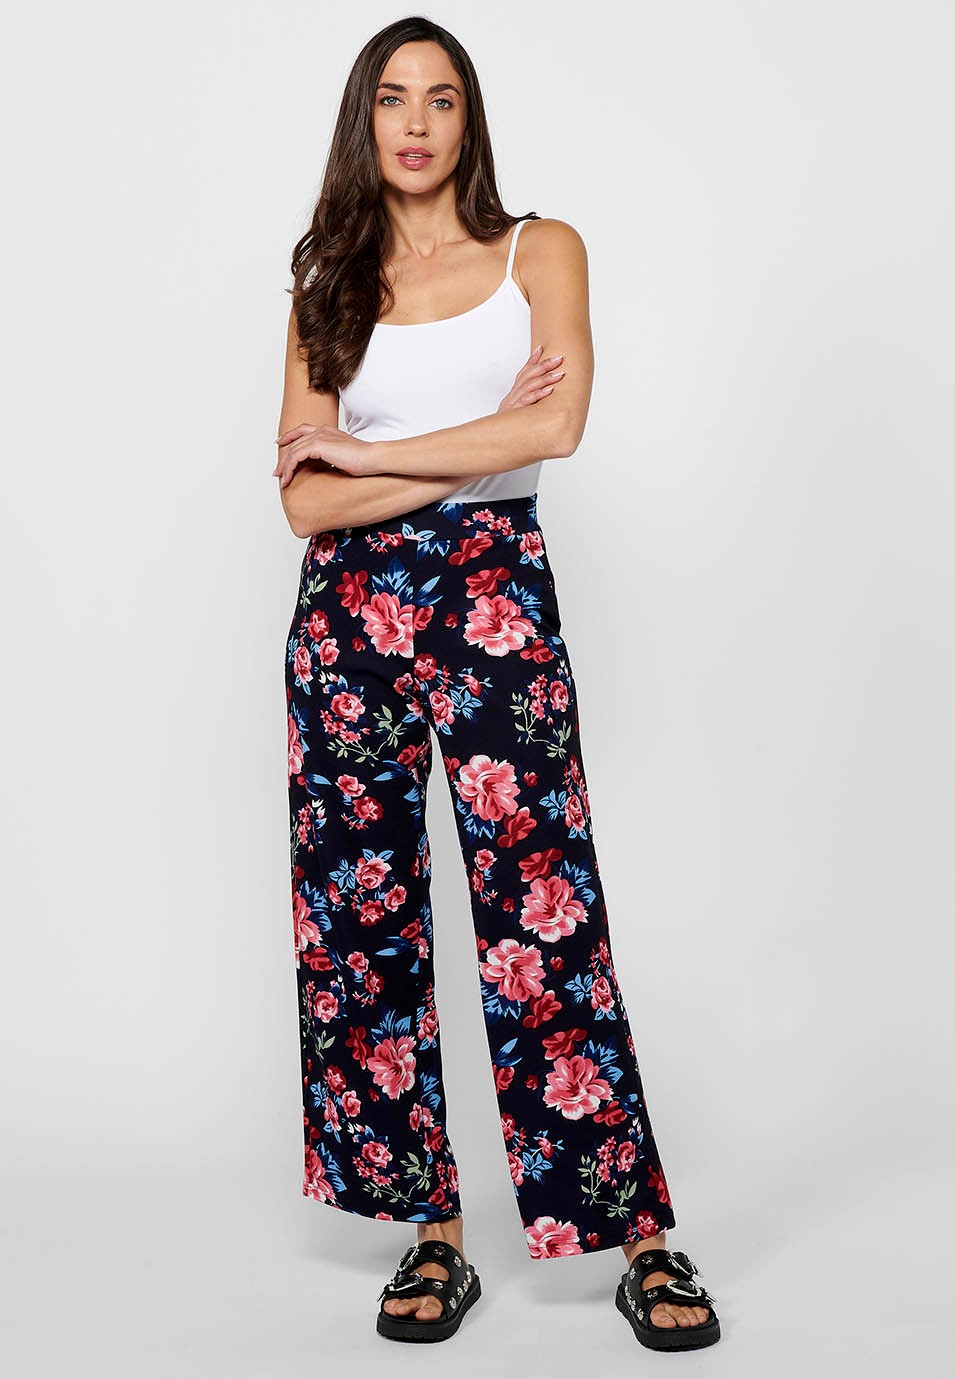 Pantalon long ample avec taille élastique caoutchoutée et imprimé floral Marine pour Femme